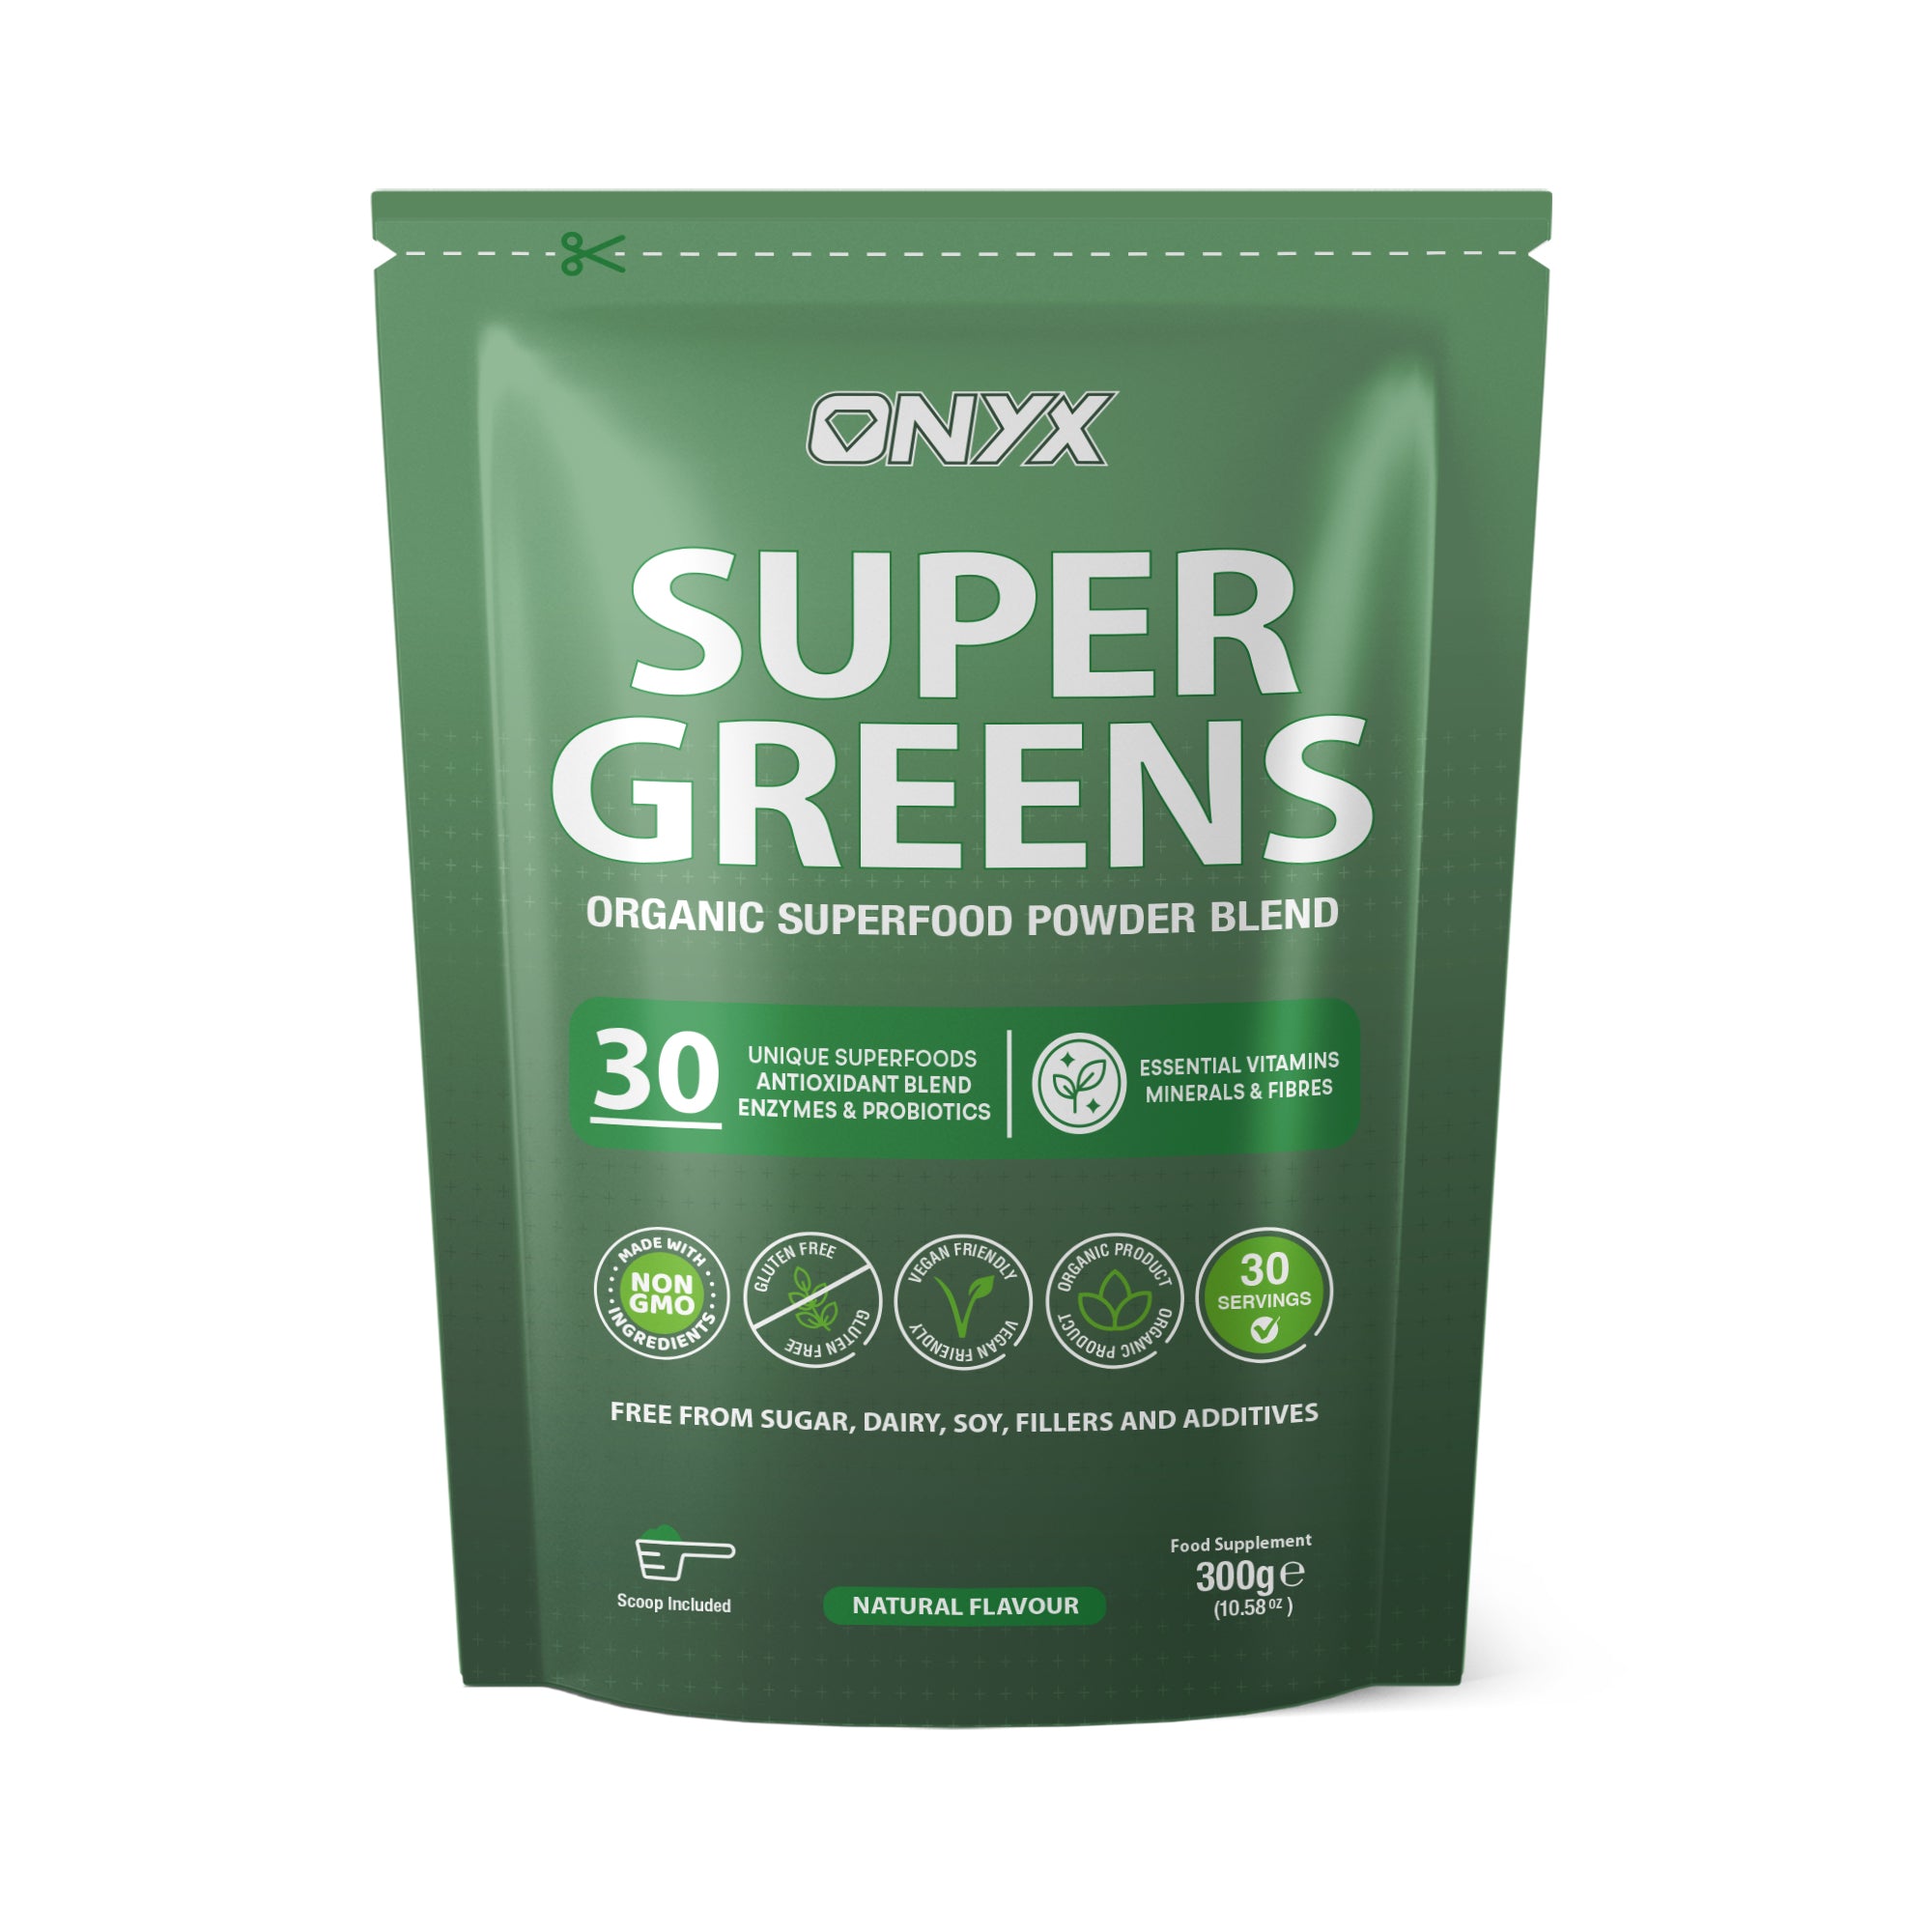 Super Greens Organic Powder Blend with Antioxidants, Enzymes, Probiotics, Vitamins, Minerals & Fibres